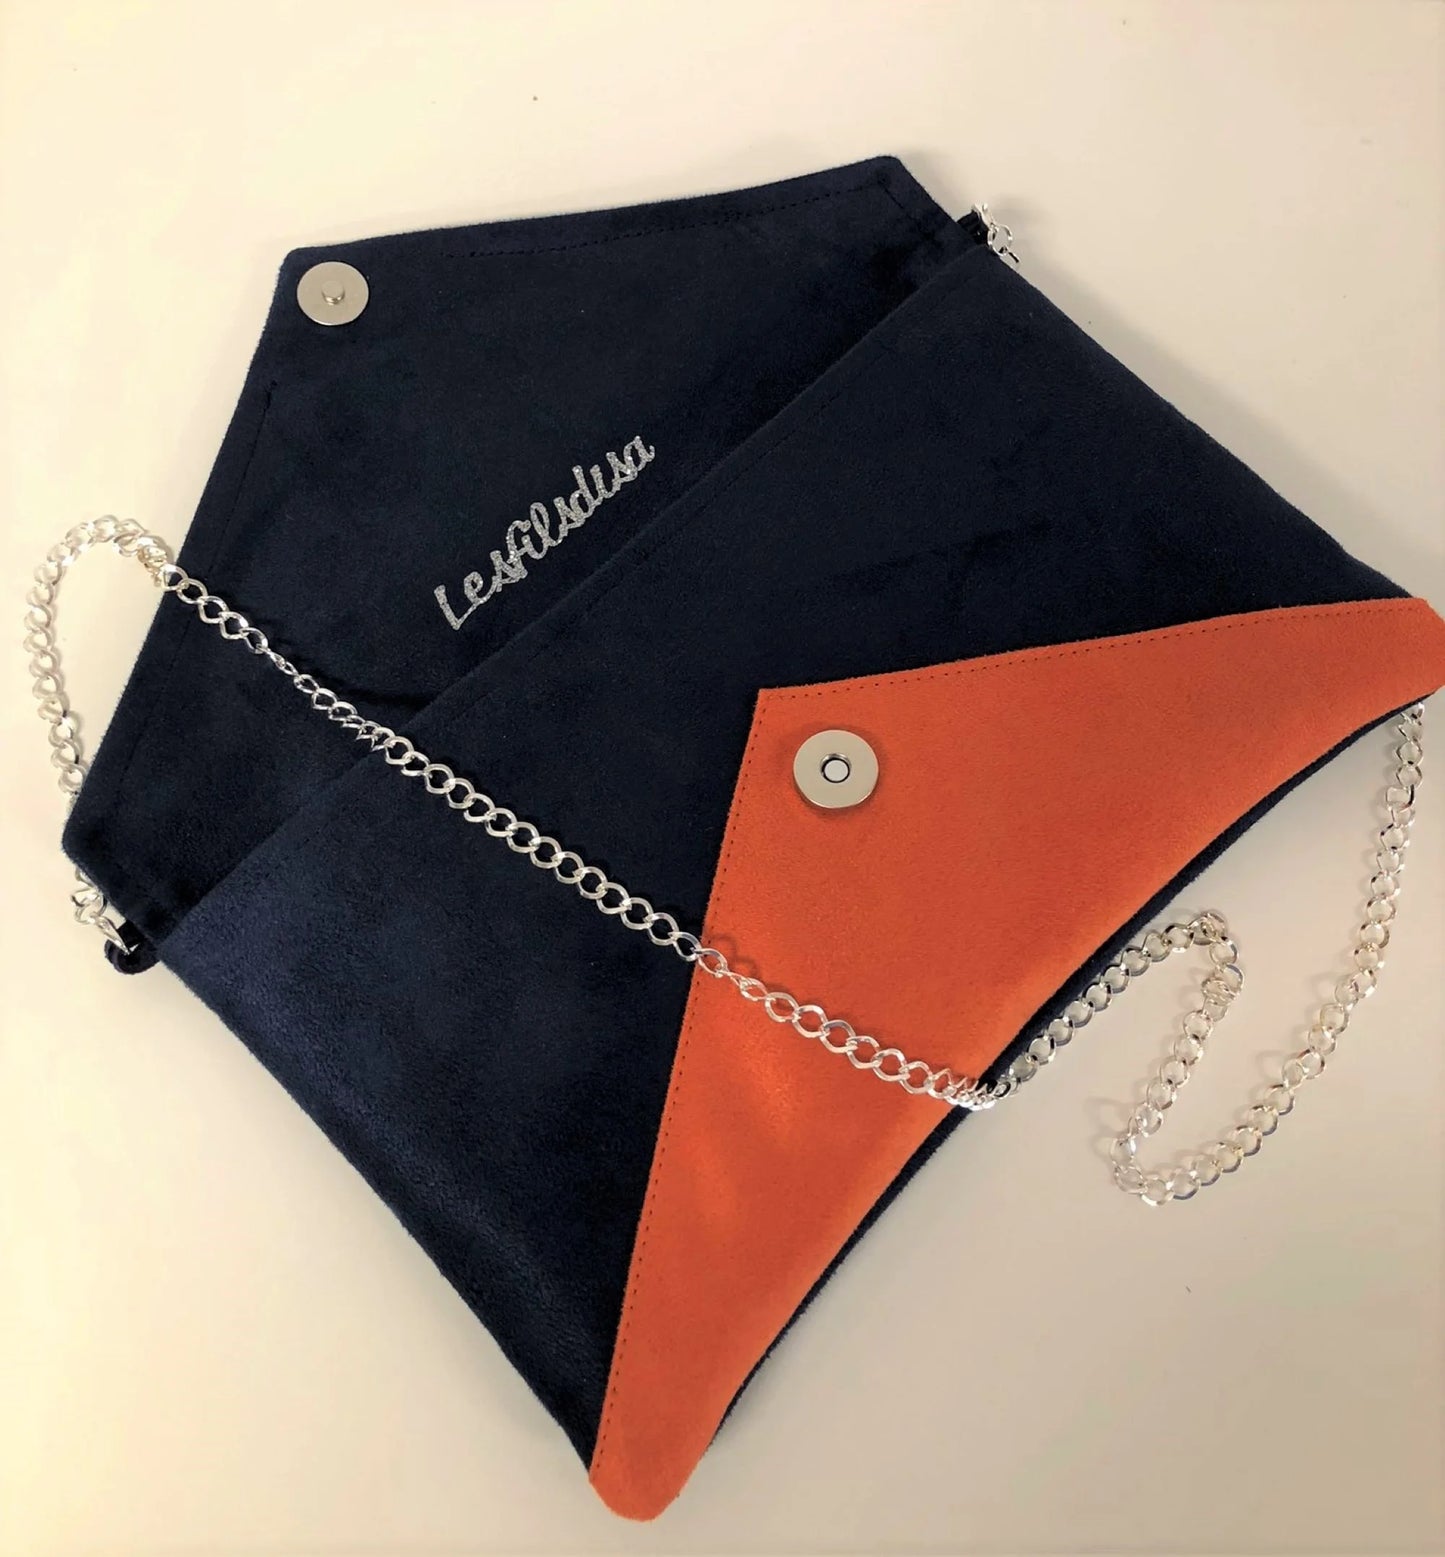 Le sac pochette Isa bleu marine et orange à paillettes argentées, ouvert.